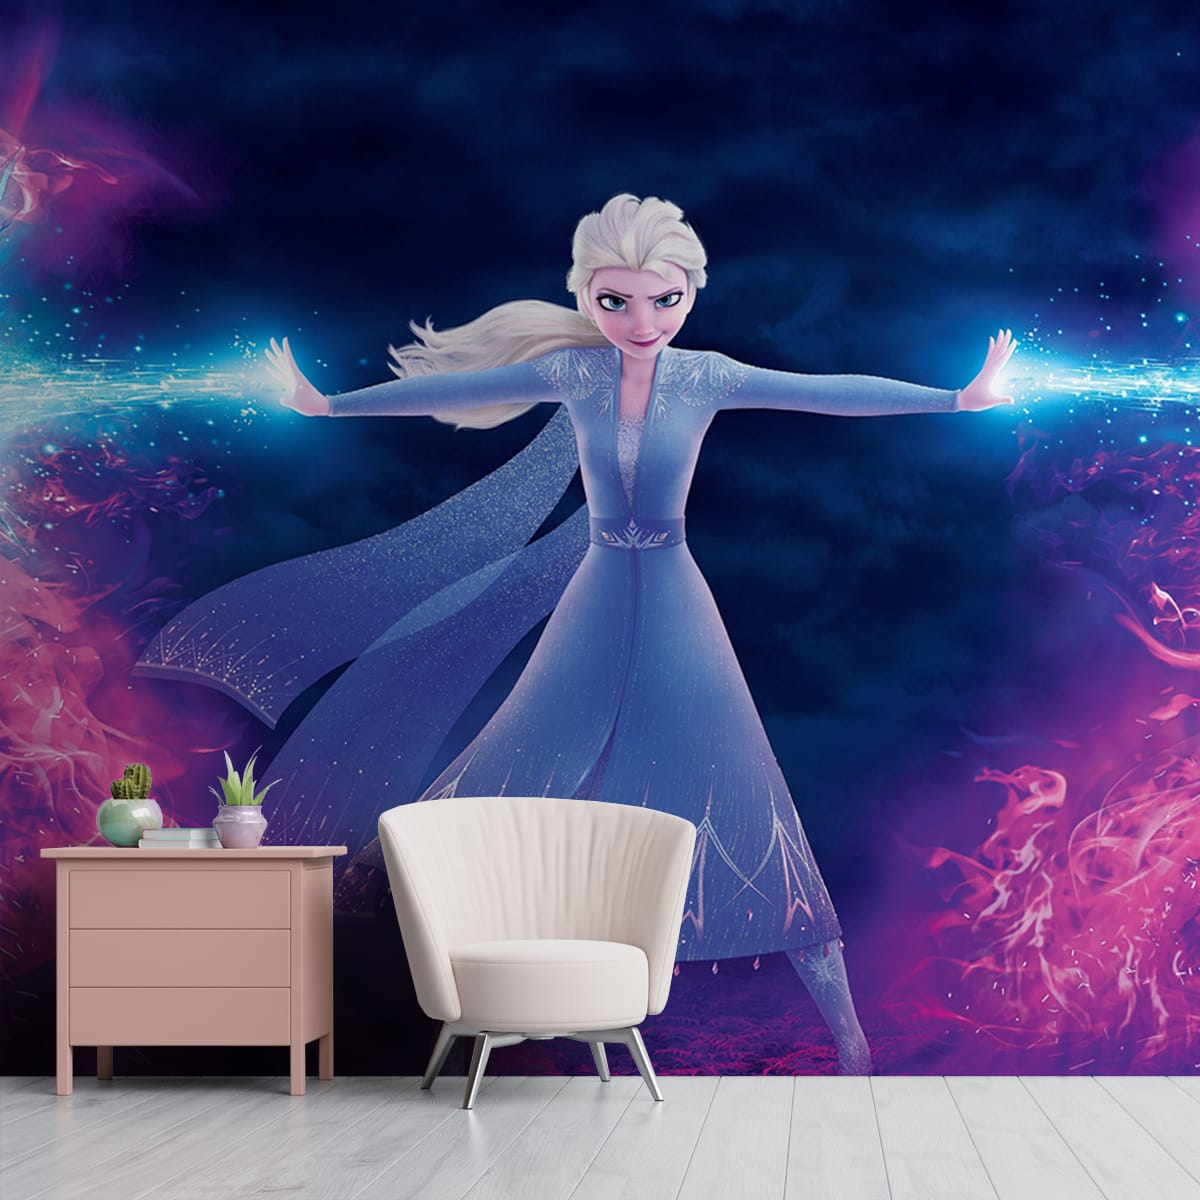 100+] Pink Elsa Frozen Wallpapers